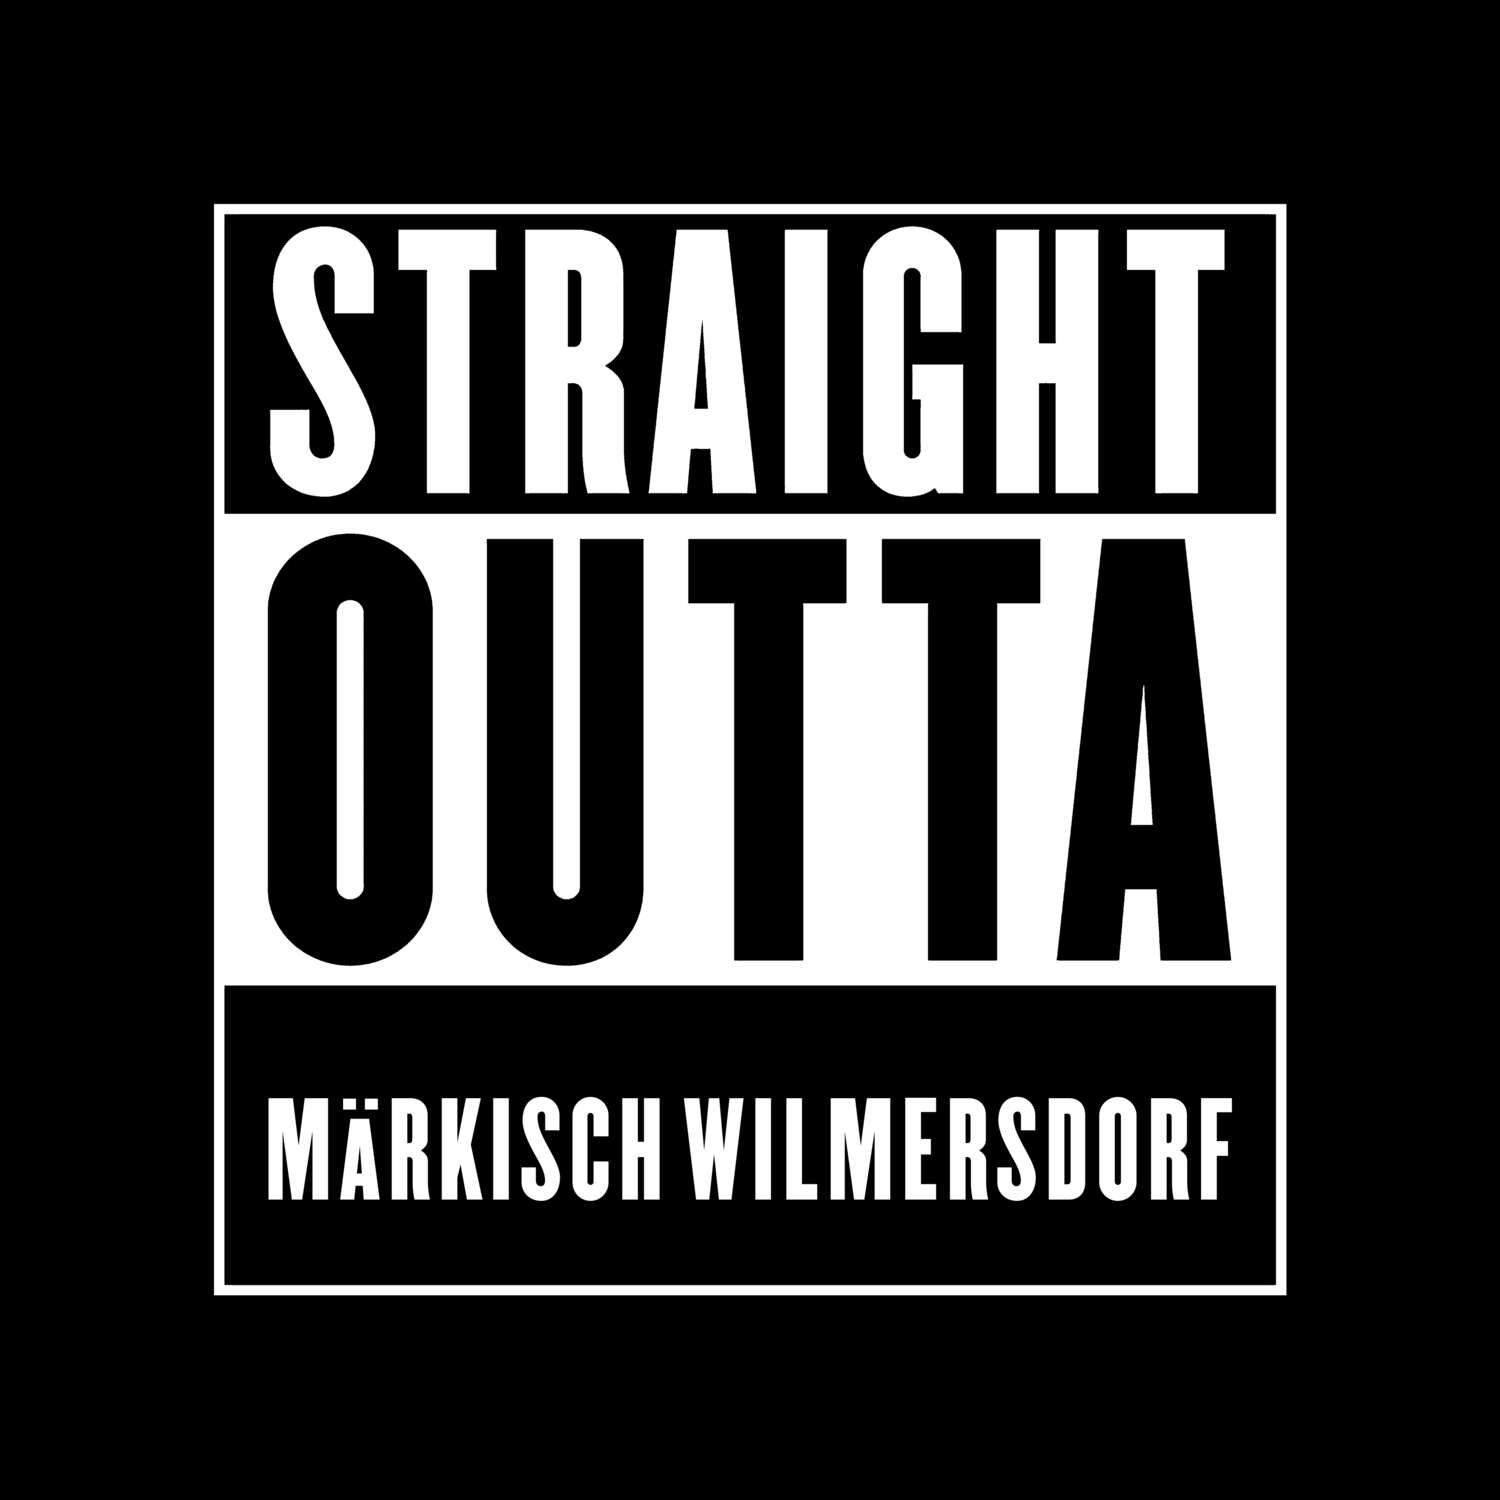 Märkisch Wilmersdorf T-Shirt »Straight Outta«